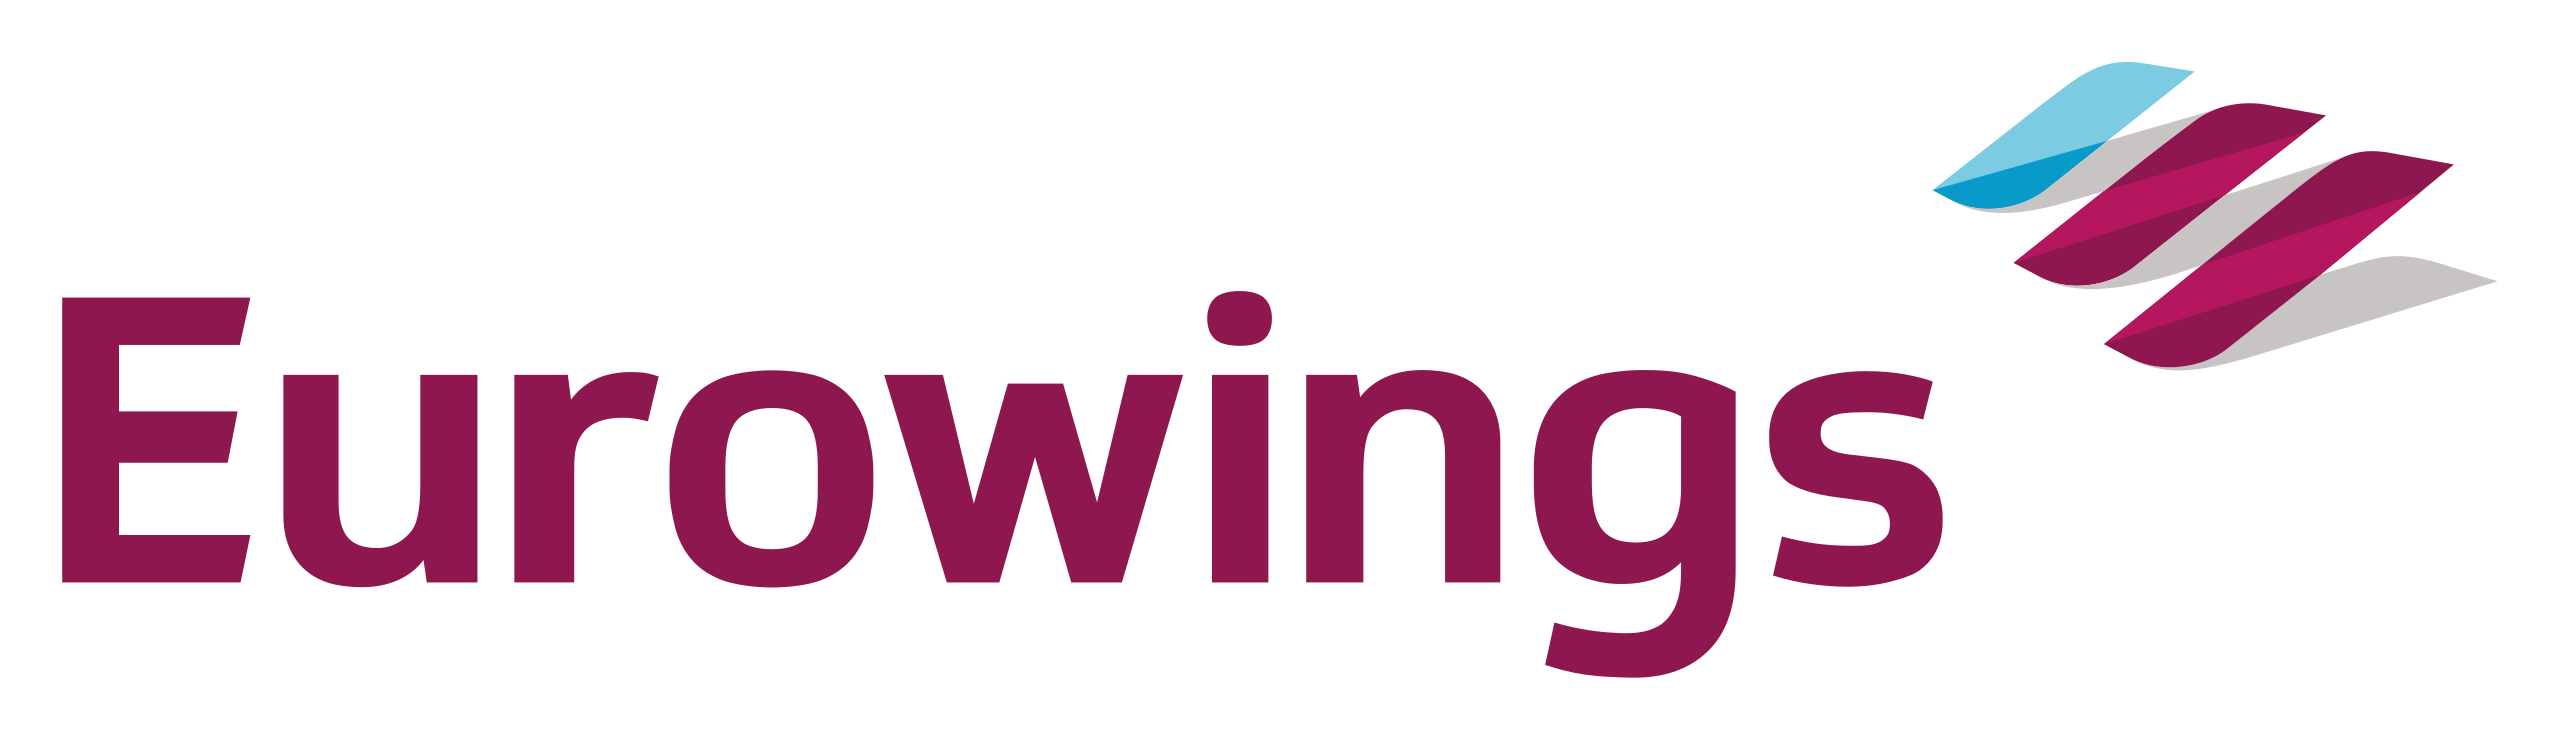 Eurowings_Logo